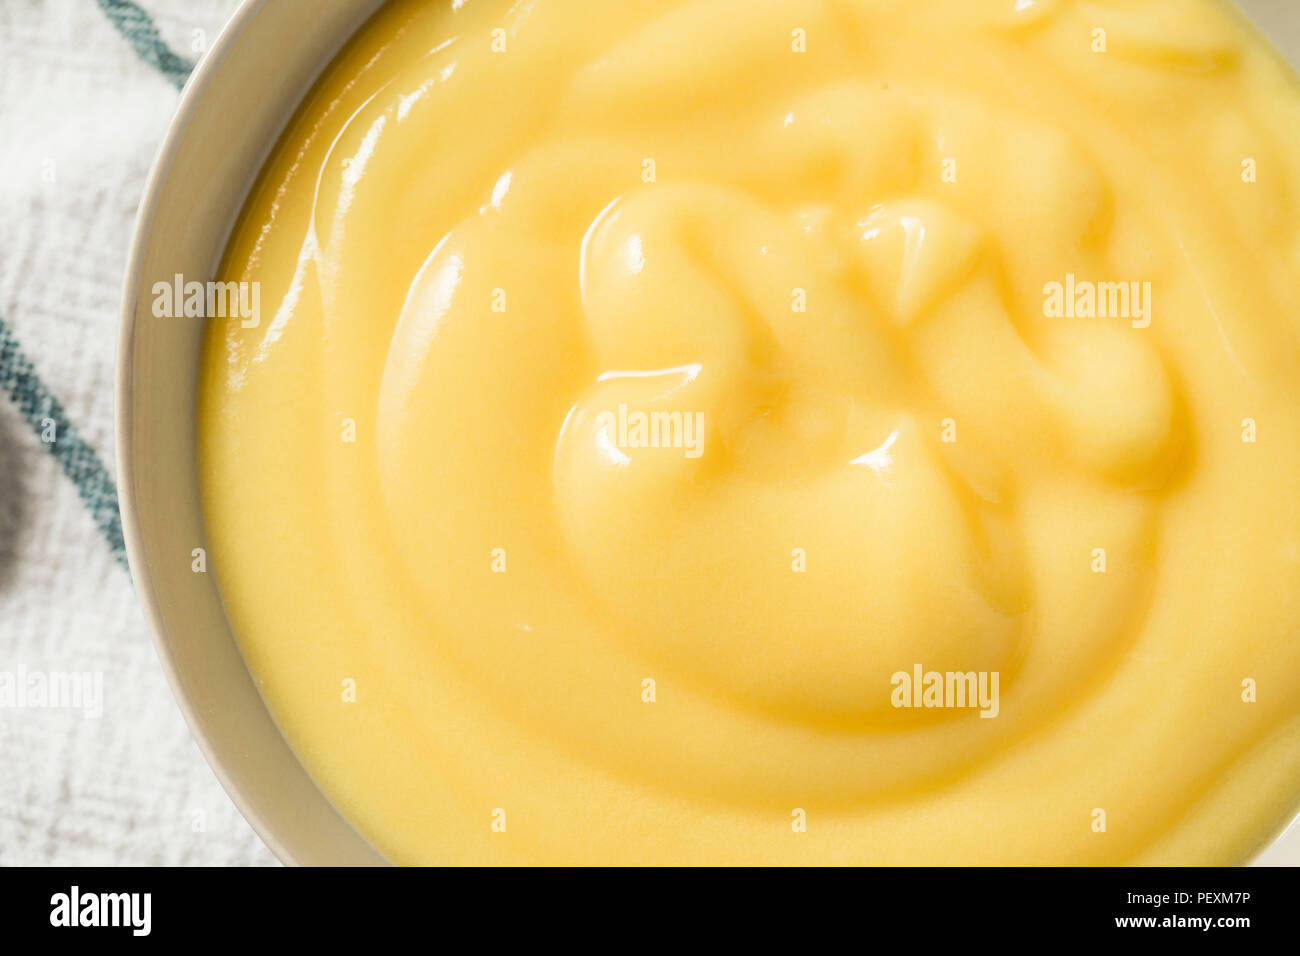 Crème pâtissière à la vanille fait maison dans un bol Banque D'Images